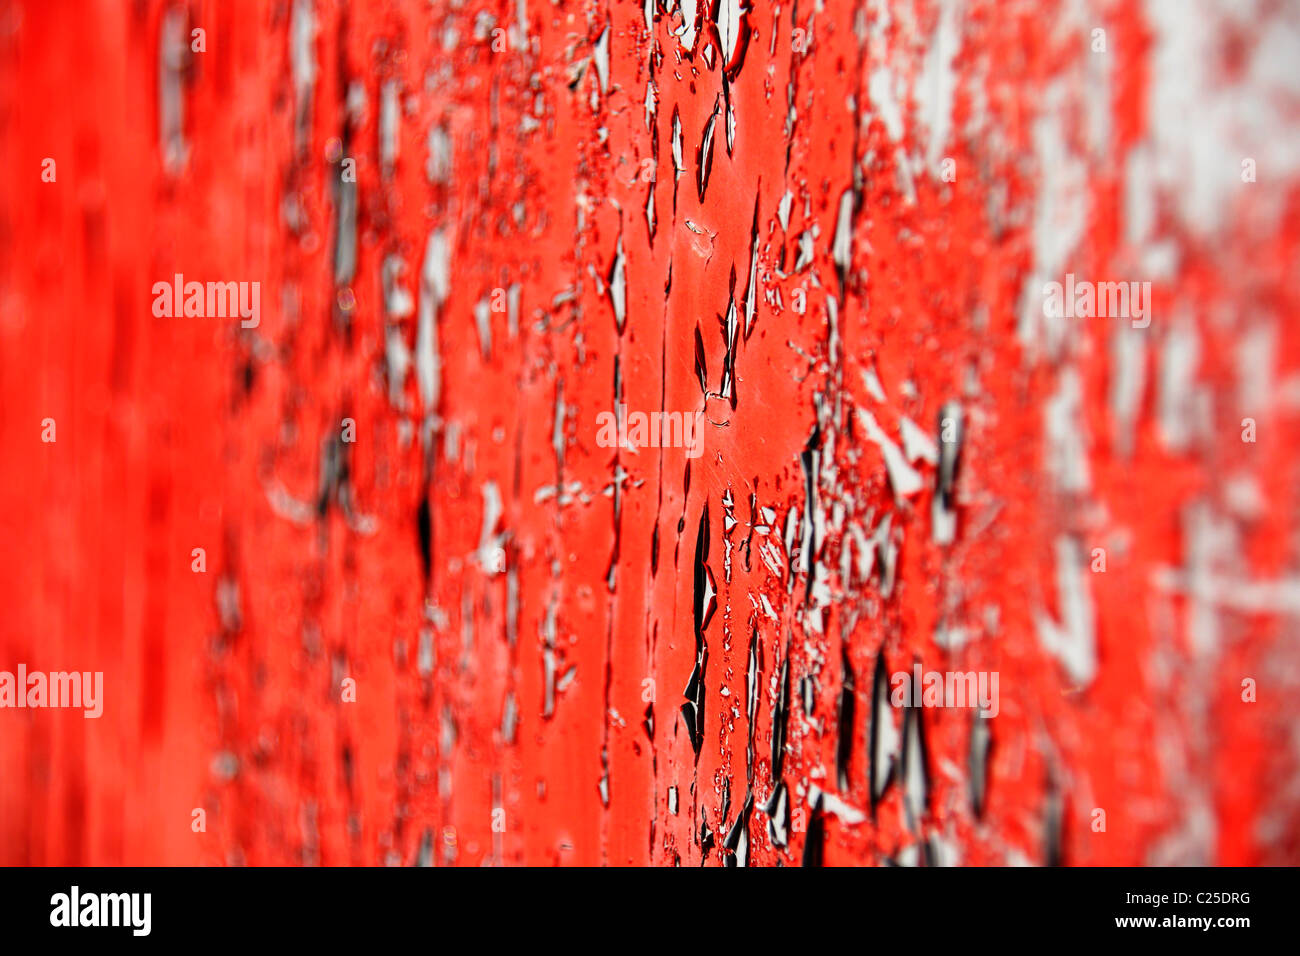 La pelatura di colore rosso brillante su vernice vecchia porta girato di un angolo per ottenere che molto poco profondo effetto DOF,messa a fuoco nel livello intermedio. Foto Stock